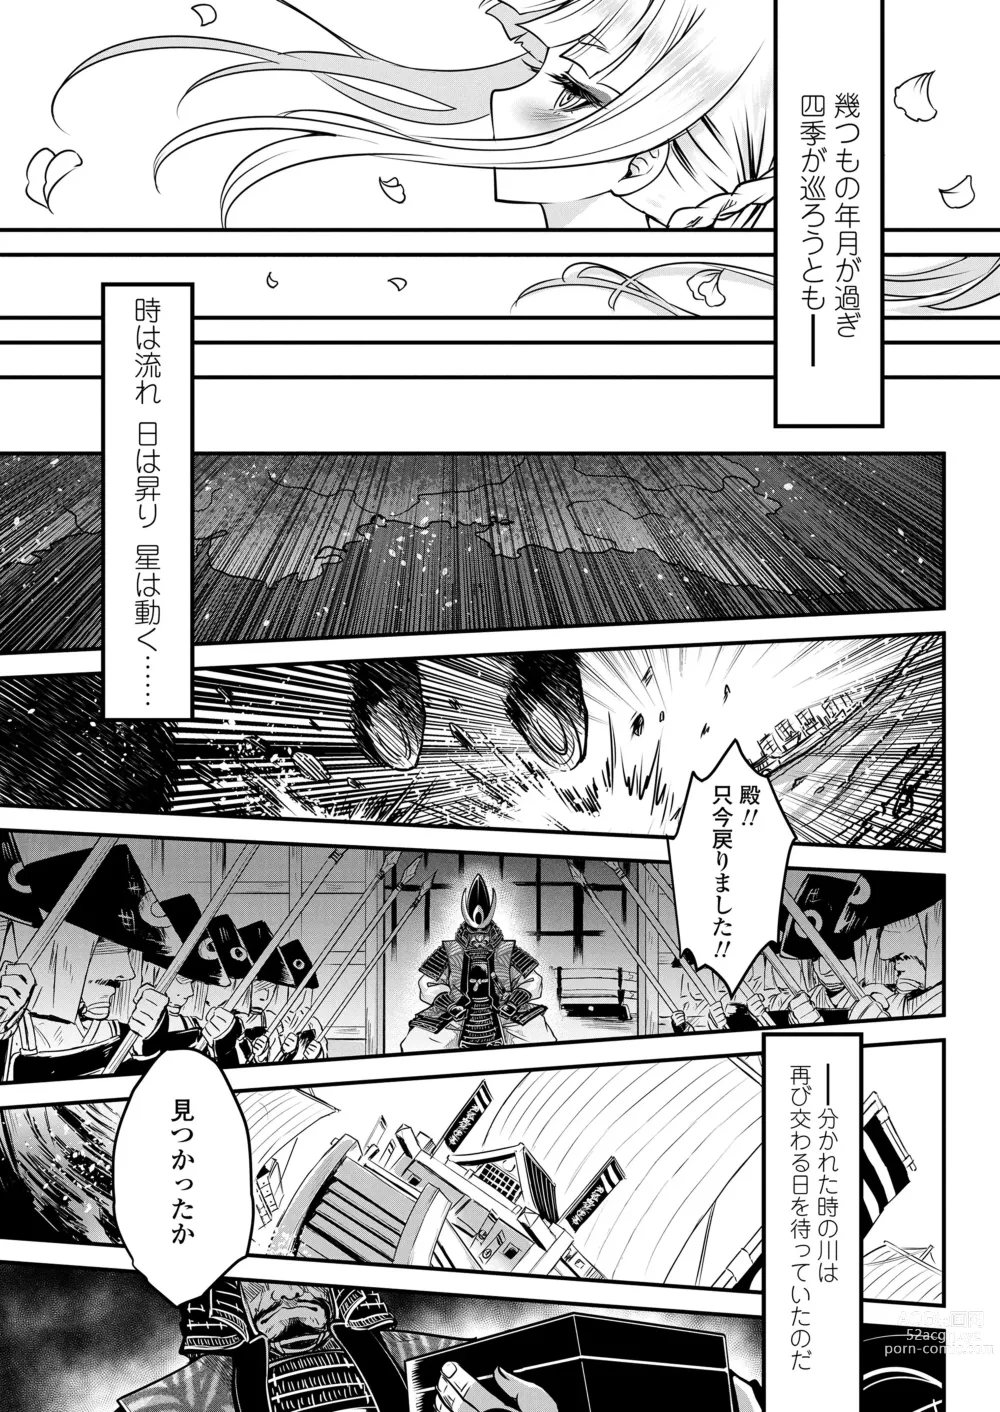 Page 315 of manga Towako 15